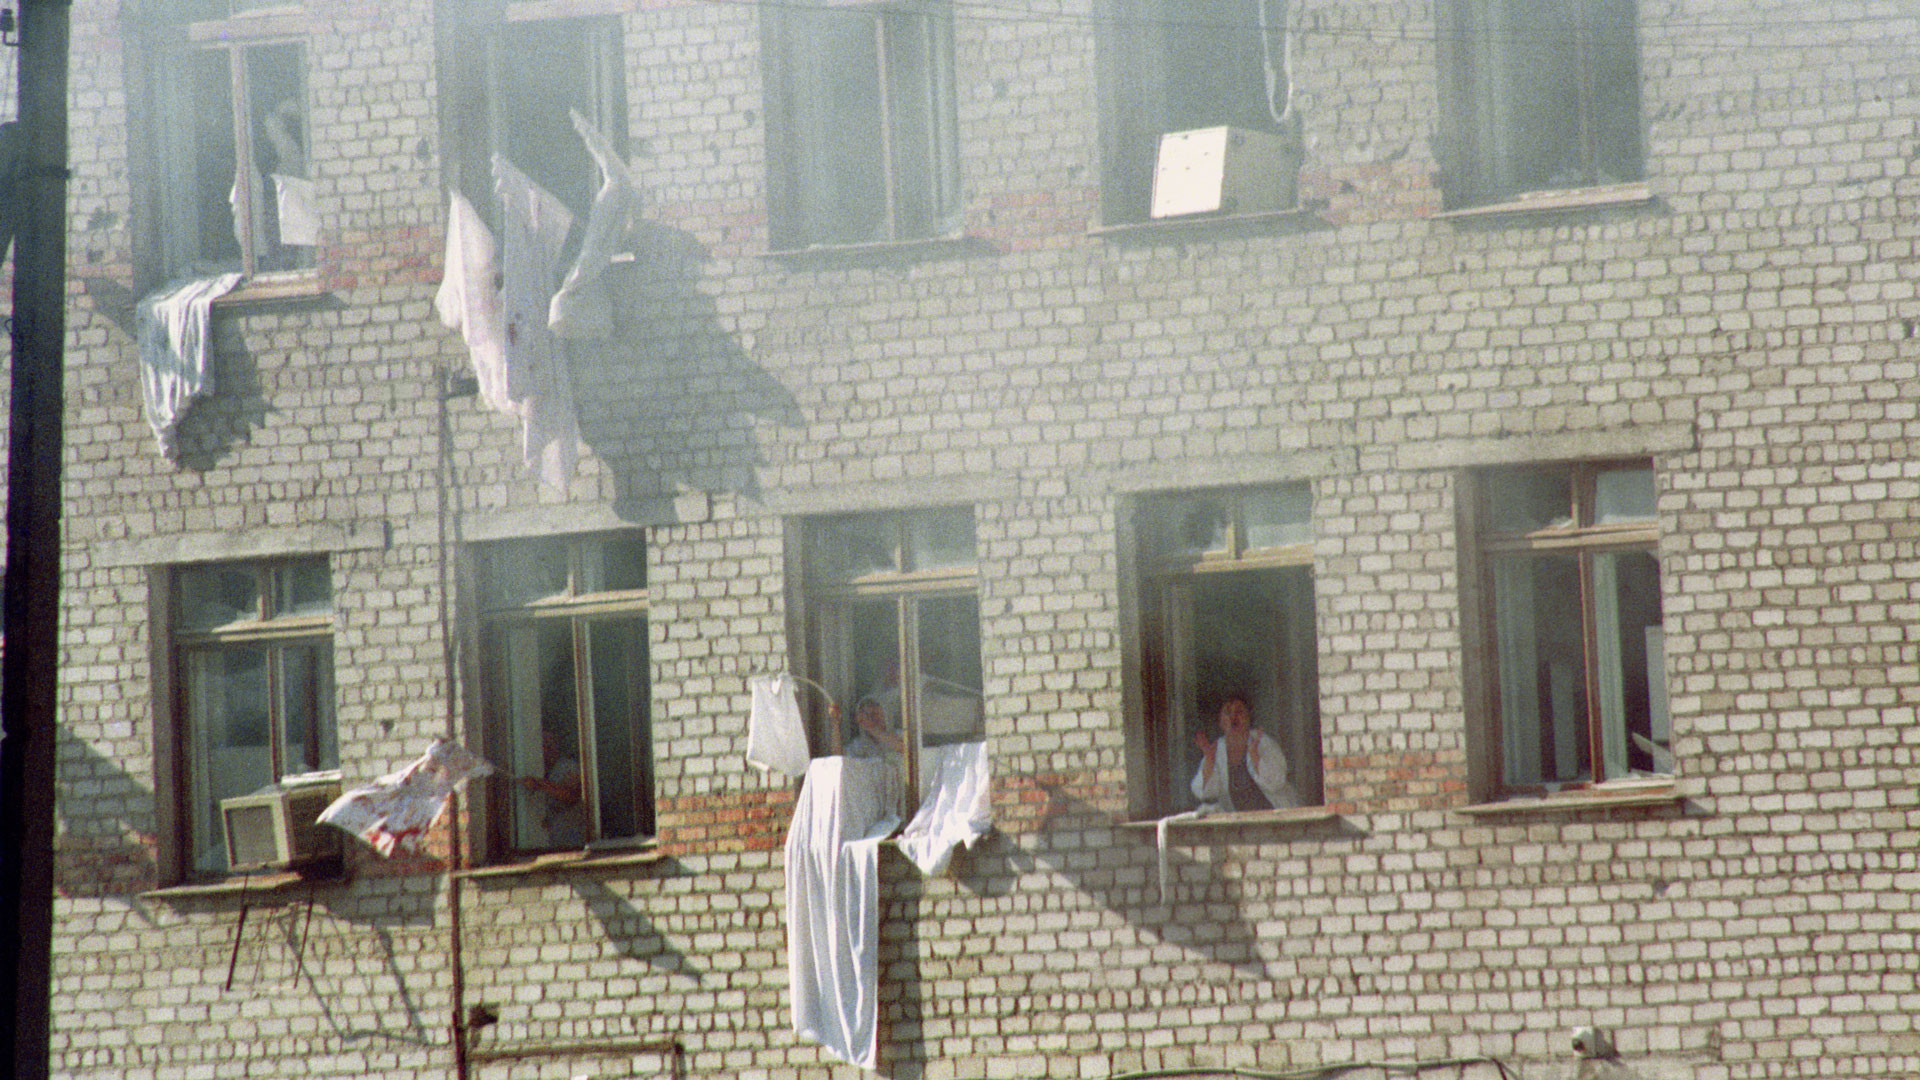 Захват больницы 1995. Захват заложников в Буденновске 1995. Террористический акт в будённовске (14—19 июня 1995). Буденновск 14 июня 1995 года. Штурм больницы в Буденновске 1995.